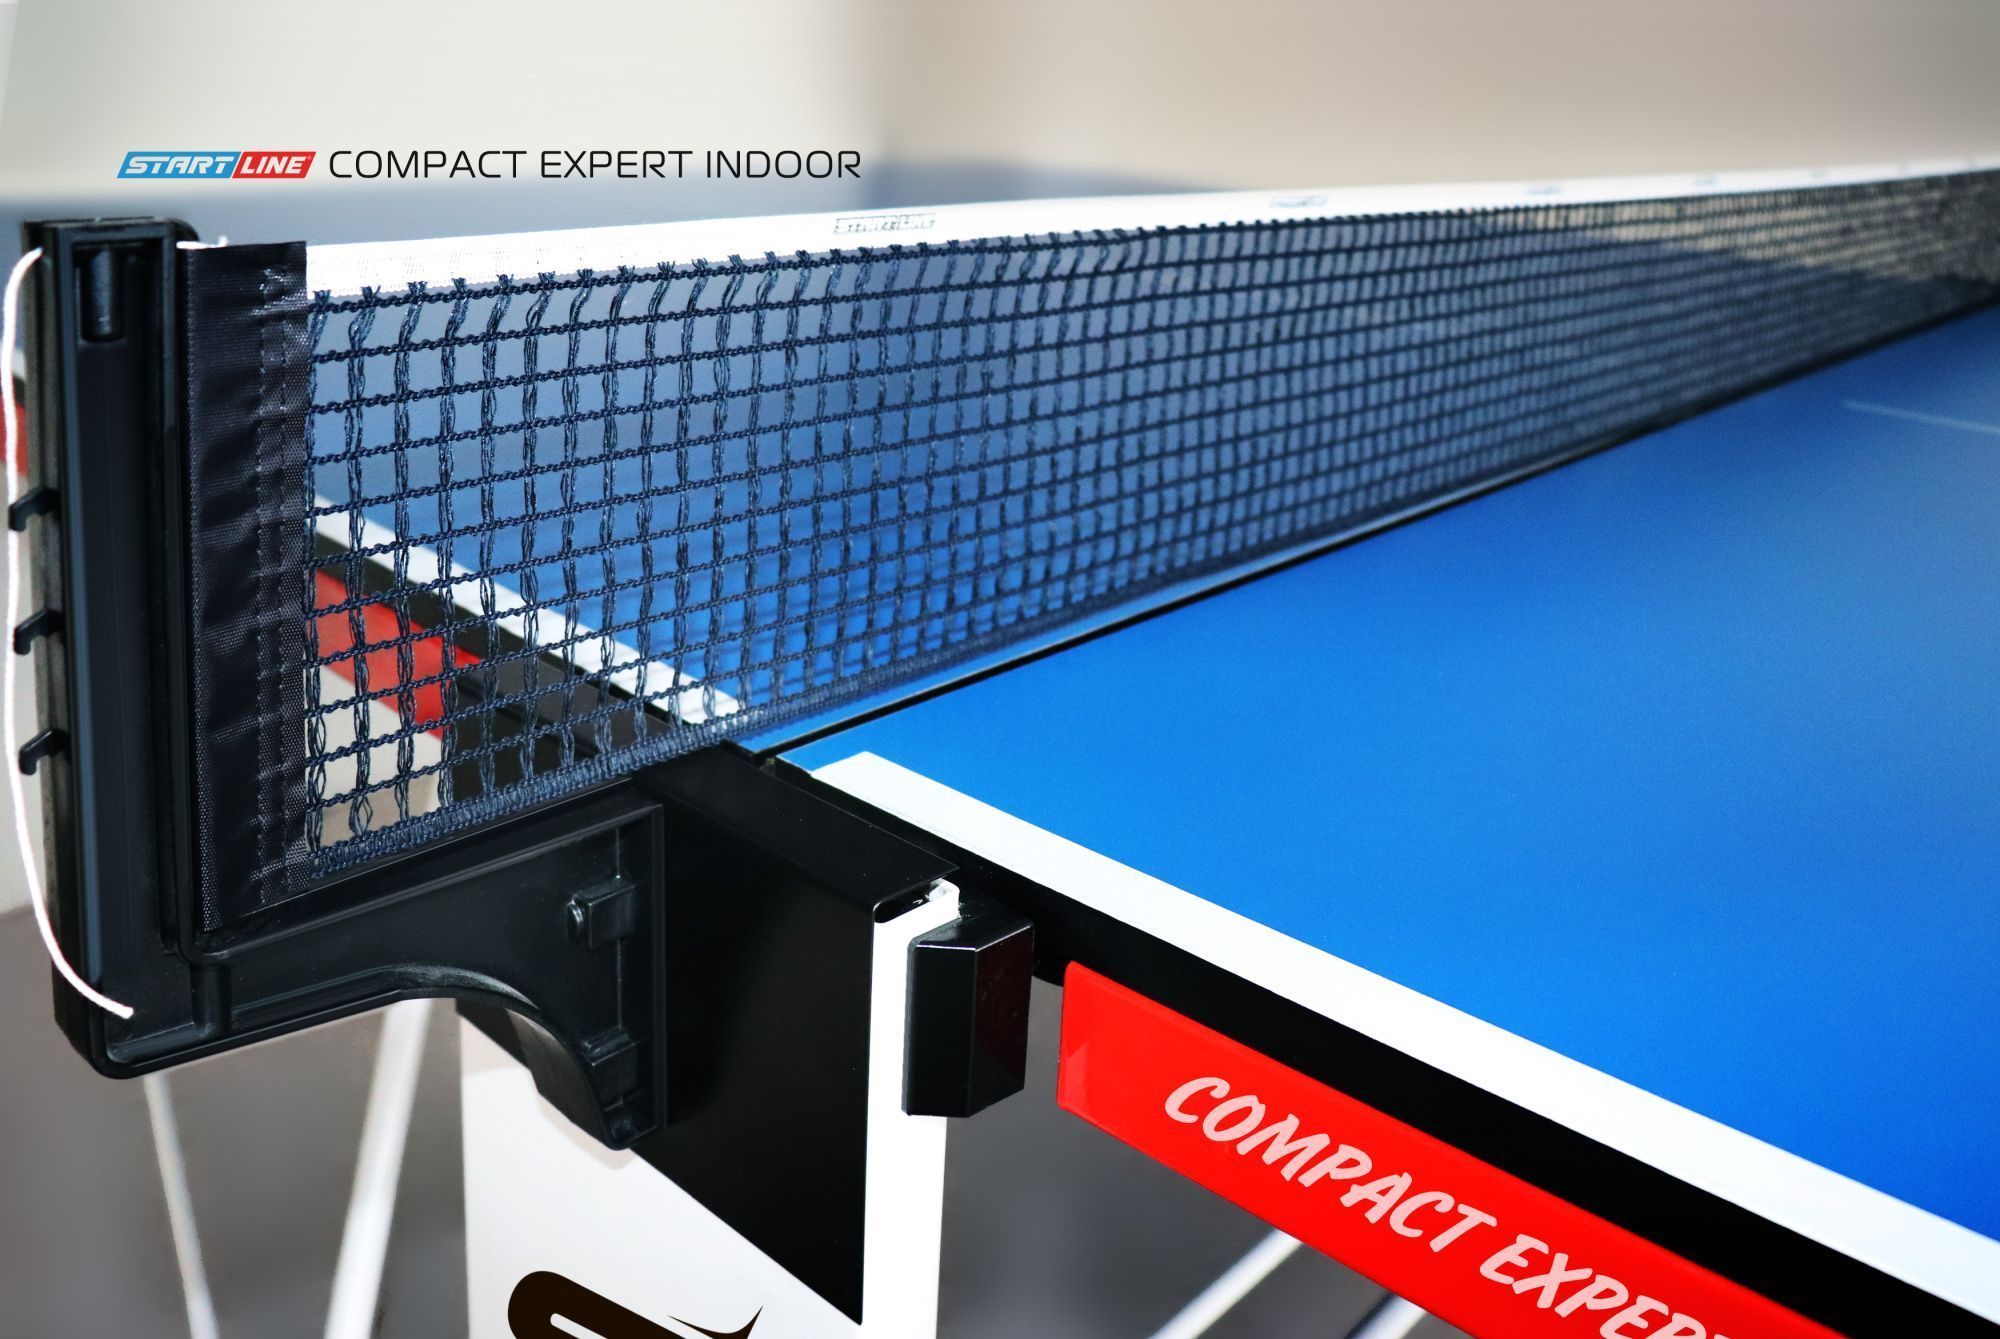 Стол теннисный Compact EXPERT Синий